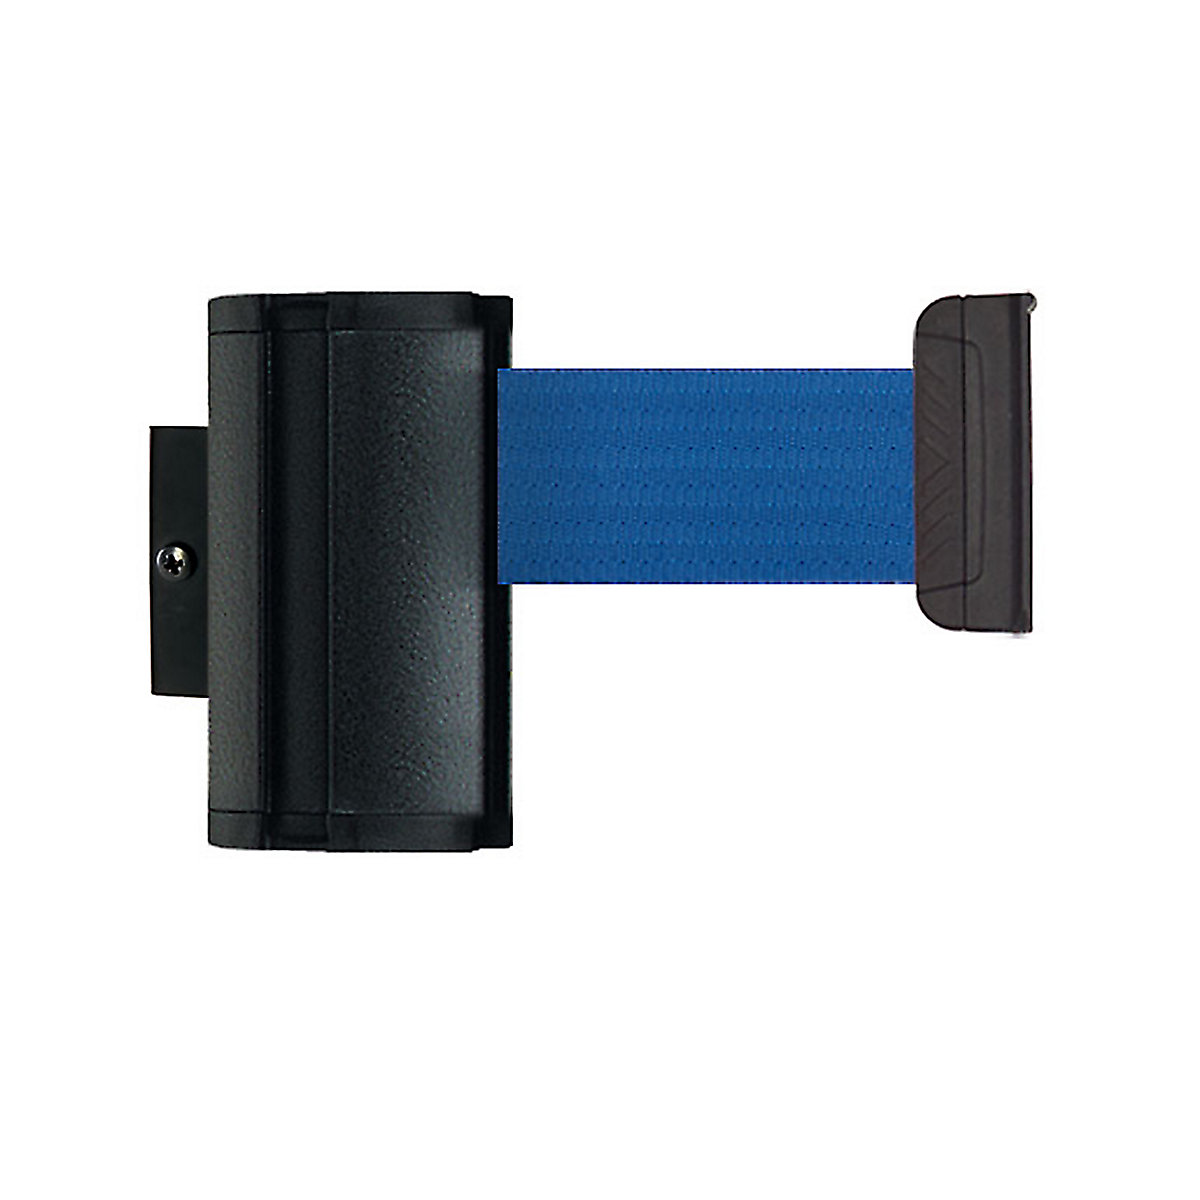 Cassete de cinta Wall Mount, extração máx. da cinta 3700 mm, cor da cinta azul-4